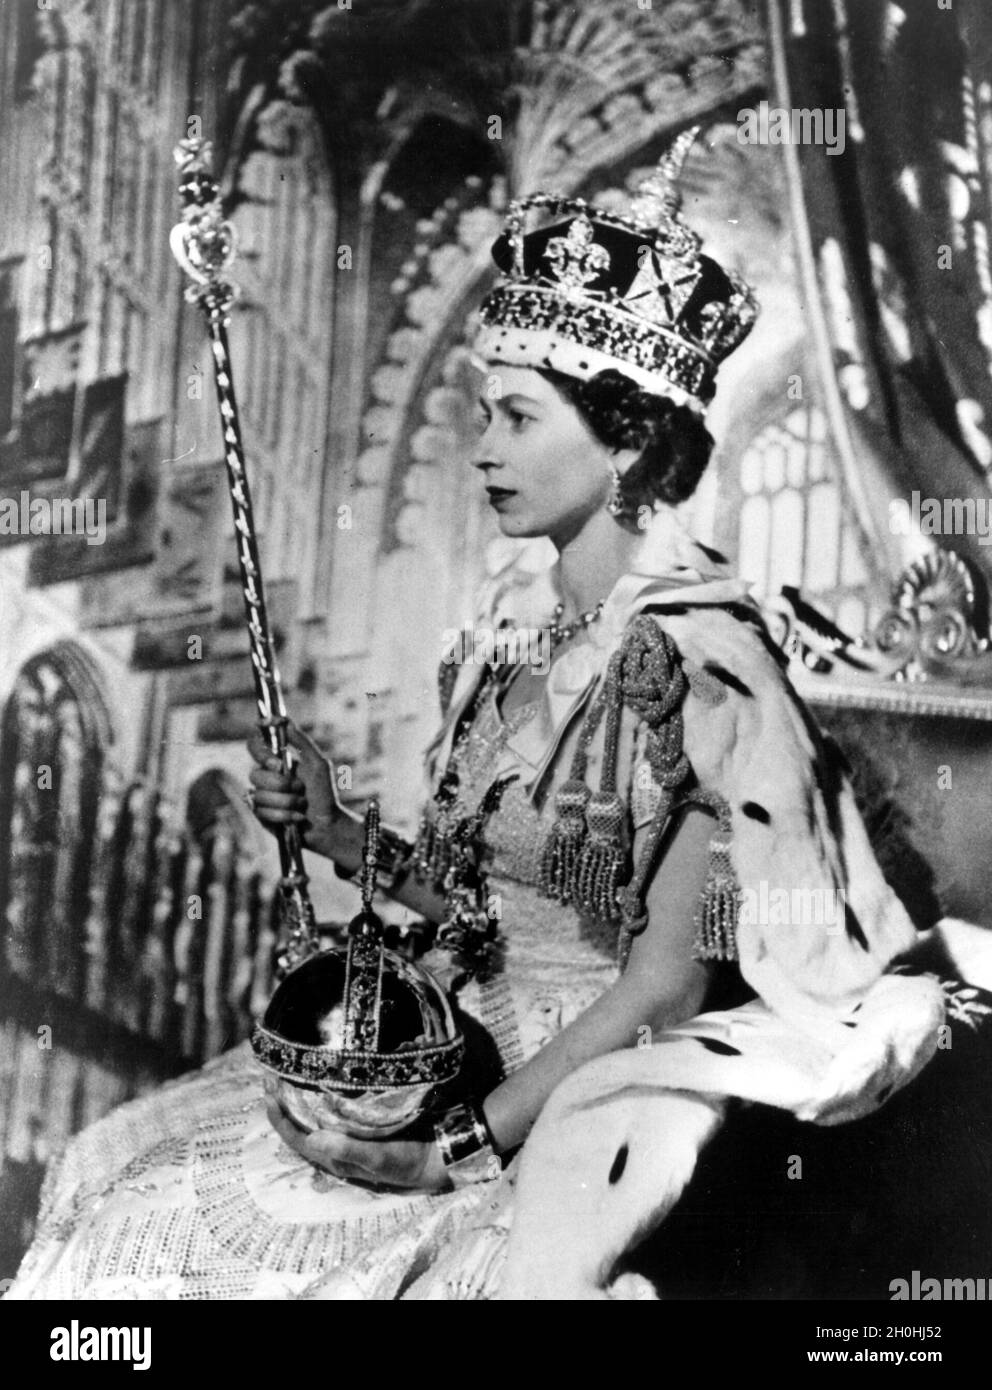 2 giugno 1953, Londra, Inghilterra: LA REGINA ELISABETTA II, 27, incoronata alla sua cerimonia di incoronazione a Westminster Abbey a Londra. Di fronte a più di 8,000 ospiti, tra cui primi ministri e capi di stato provenienti da tutto il Commonwealth e dal mondo, ha preso il giuramento dell'Incoronazione ed è ora destinata a servire il suo popolo e a mantenere le leggi di Dio. La Regina sedetteva nella Sala del Trono a Buckingham Palace dopo la sua incoronazione nell'Abbazia di Westminster. Il QEII indossa la corona imperiale di stato. Nella sua mano sinistra tiene l'Orb, nella sua destra lo scettro con la croce. (Credit Image: © Agenzia Stampa Keystone Foto Stock